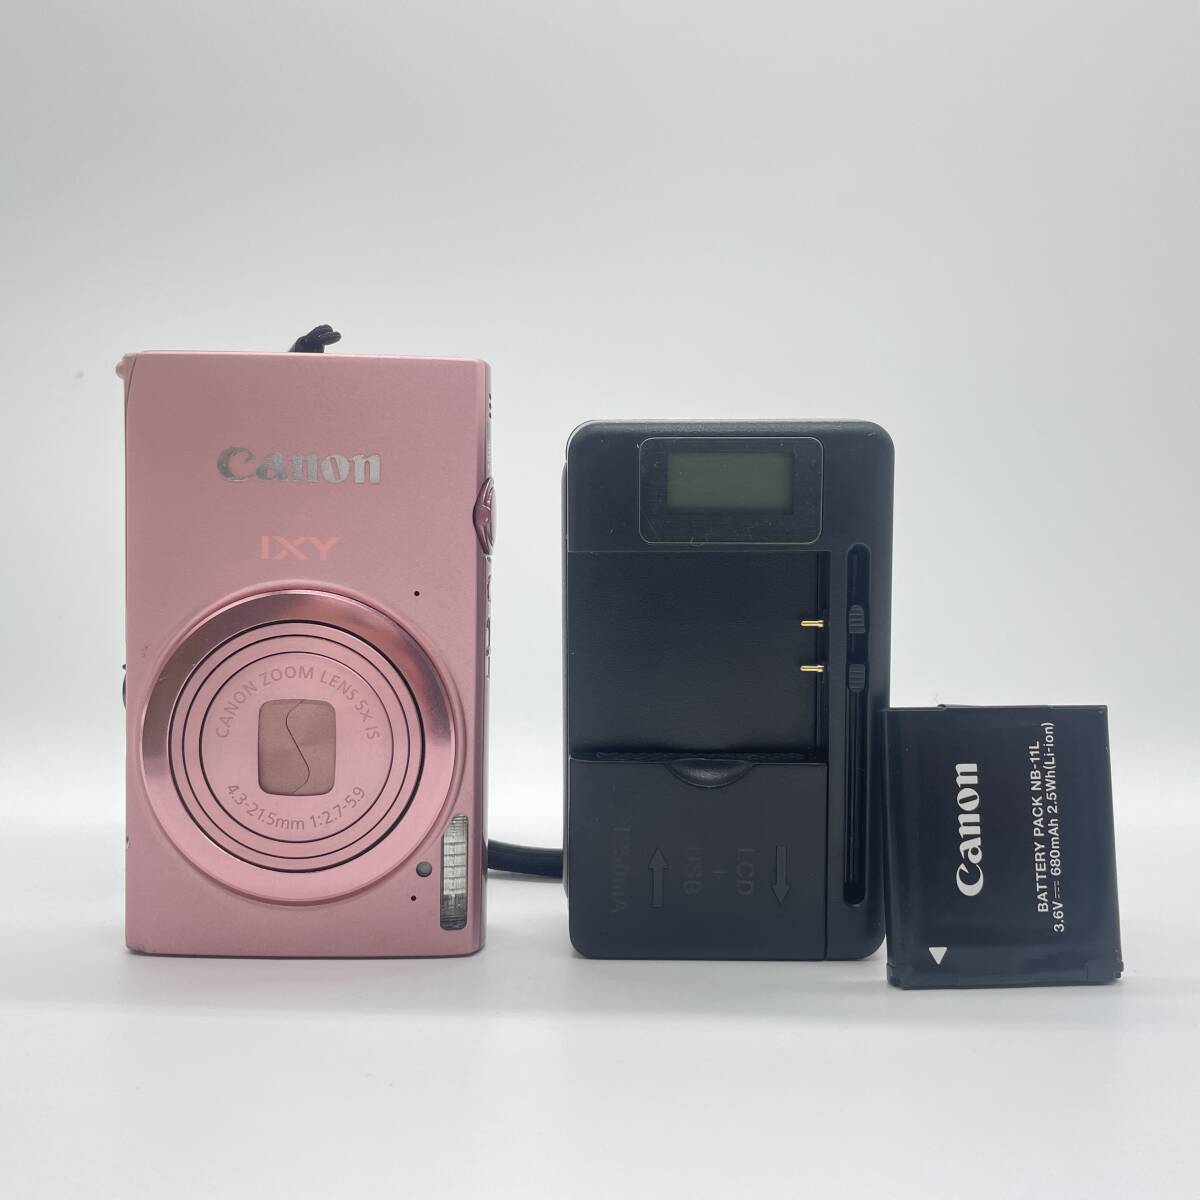 【動作確認済み】Canon IXY 430F PINK コンデジ デジカメ デジタルカメラ シャッター&フラッシュ動作OKの画像1